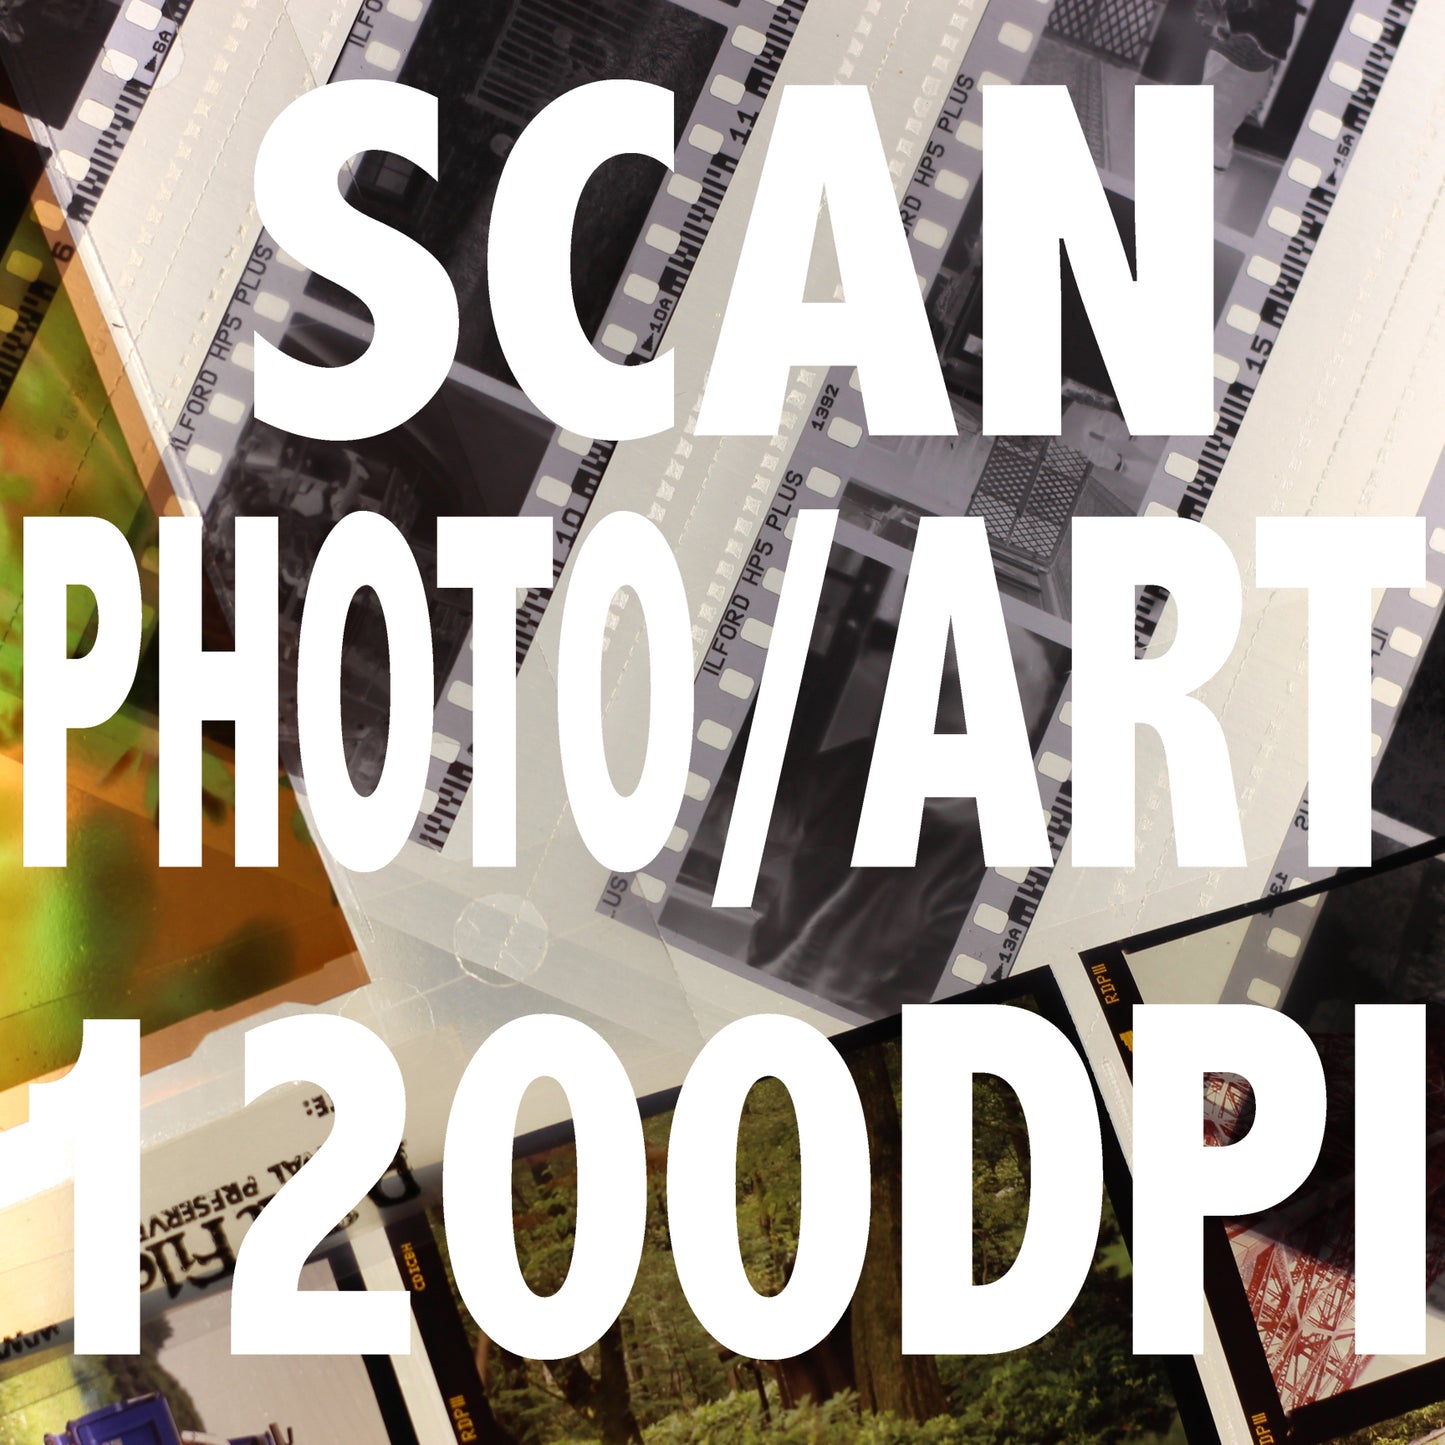 Prints and Artworks Scanning per image 1200DPI